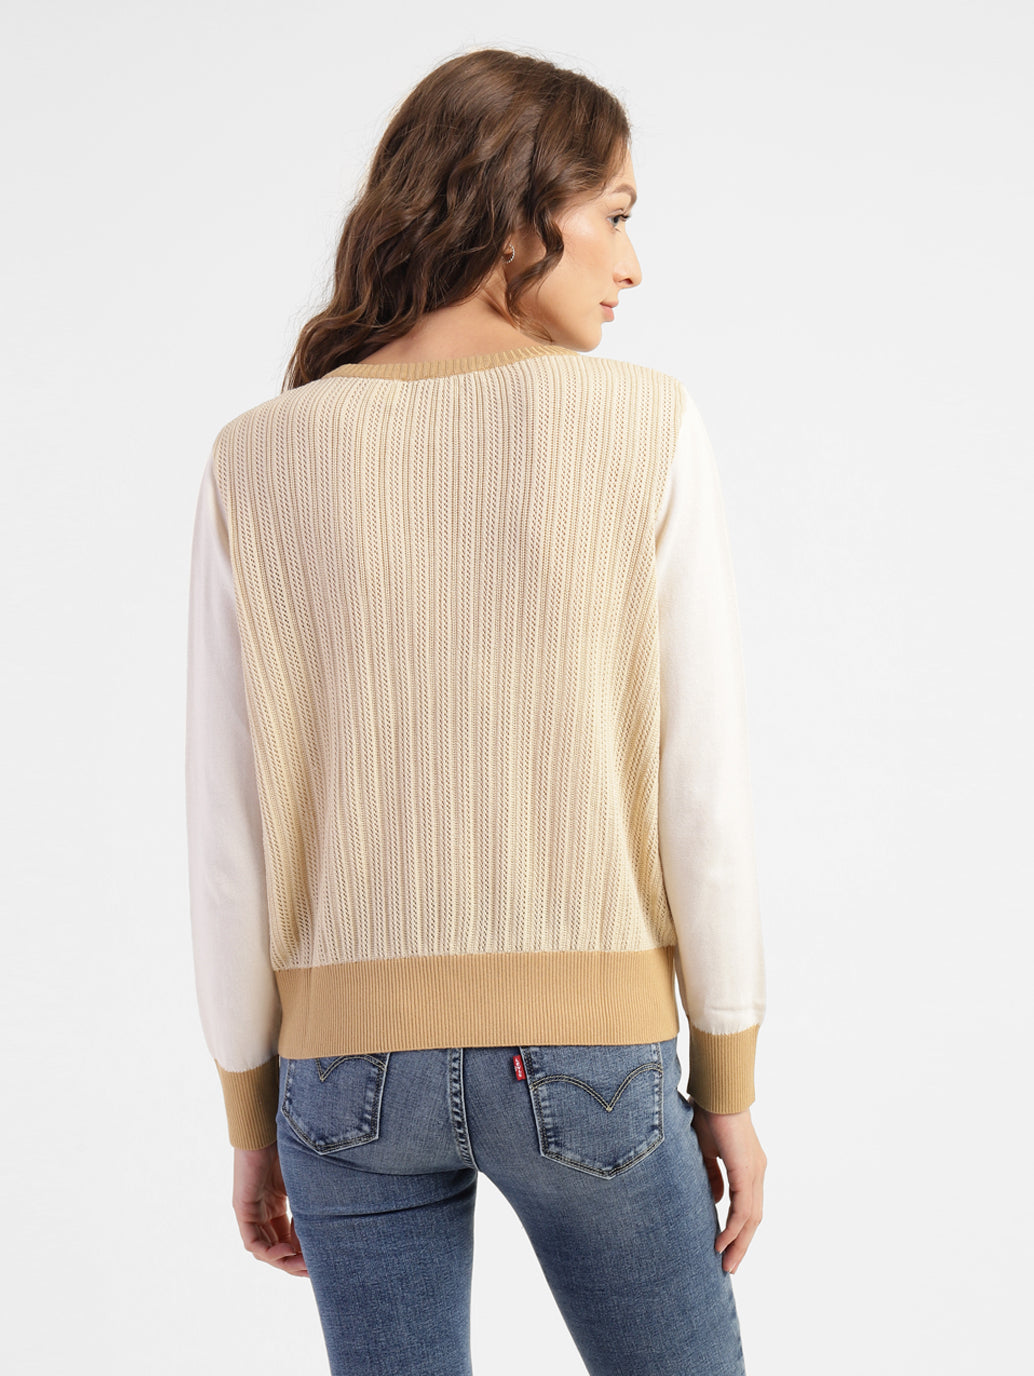 Women's Self Design Round Neck Sweater